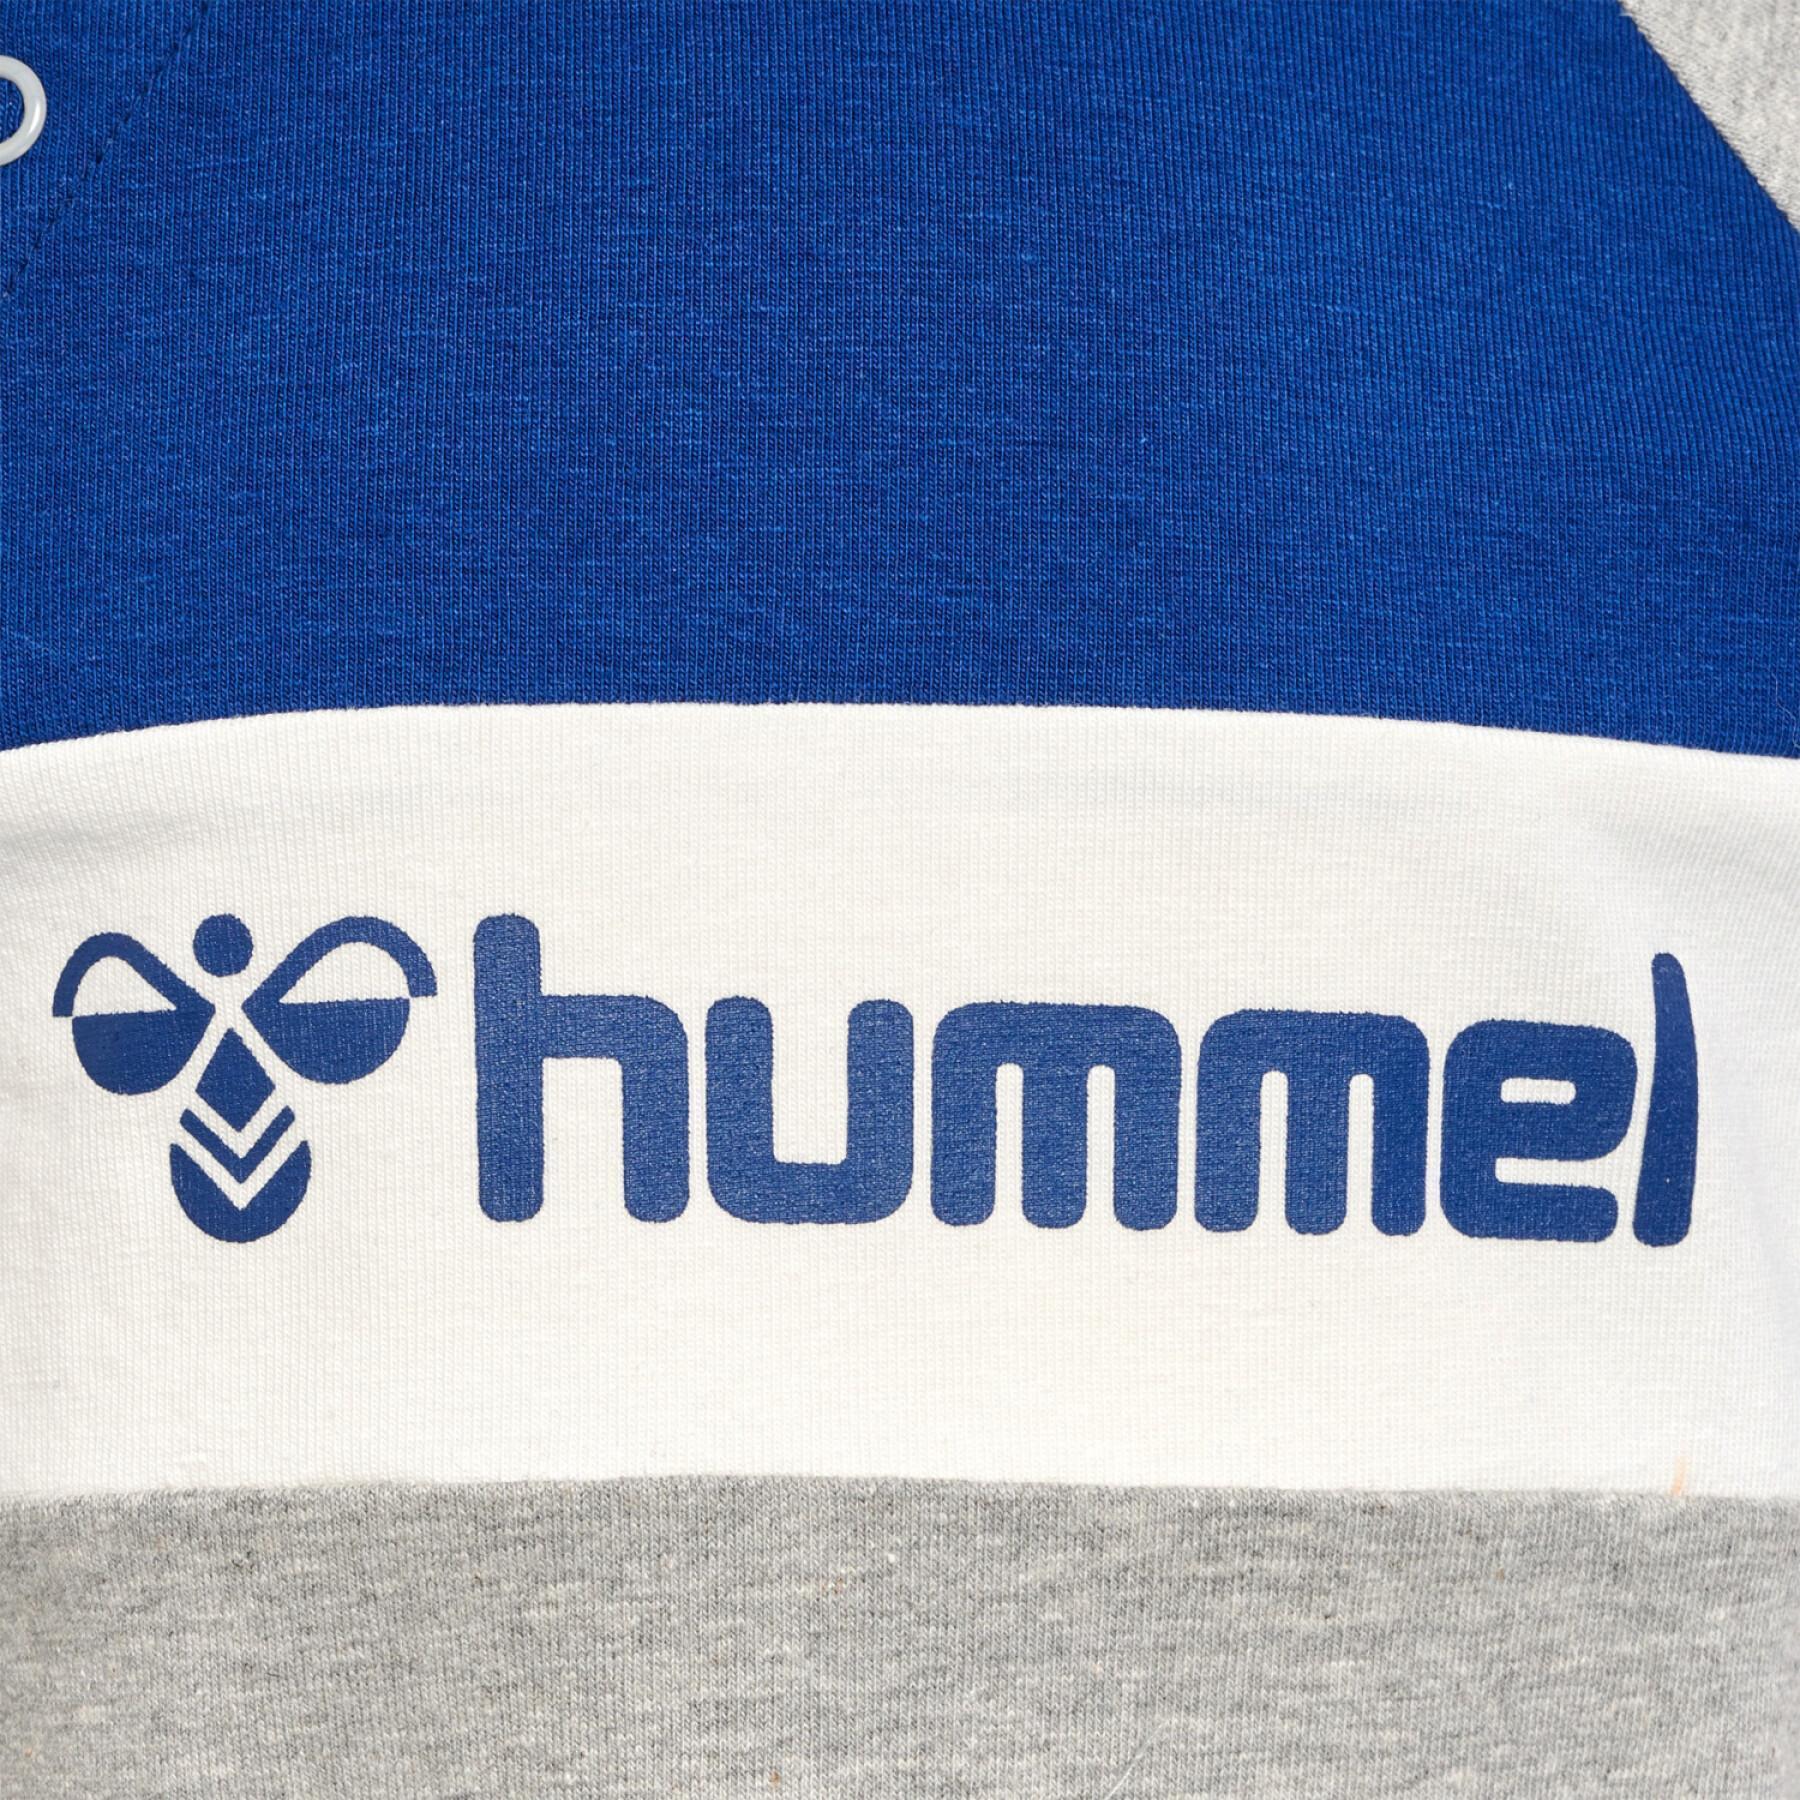 Camiseta de manga larga para bebé Hummel hmlMurphy